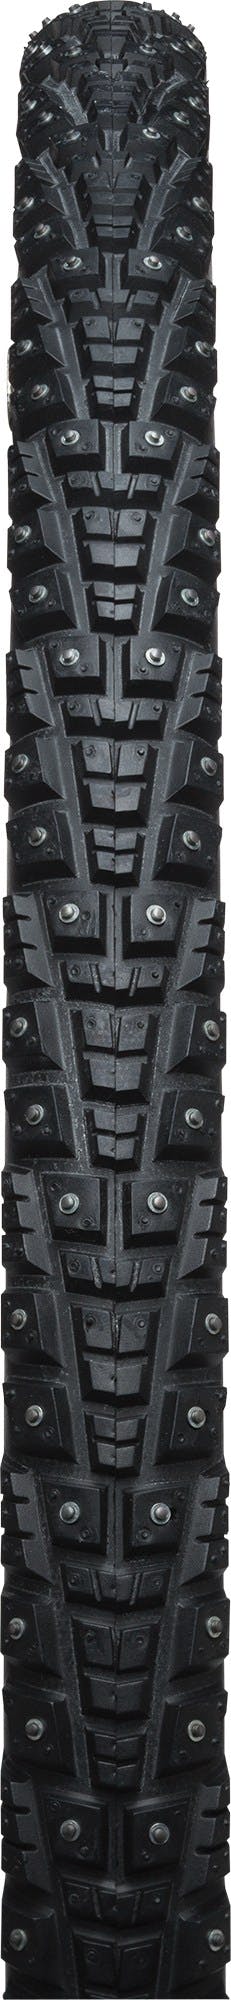 45NRTH Gravdal Studded Bike Tire · Black · 700c x 38mm